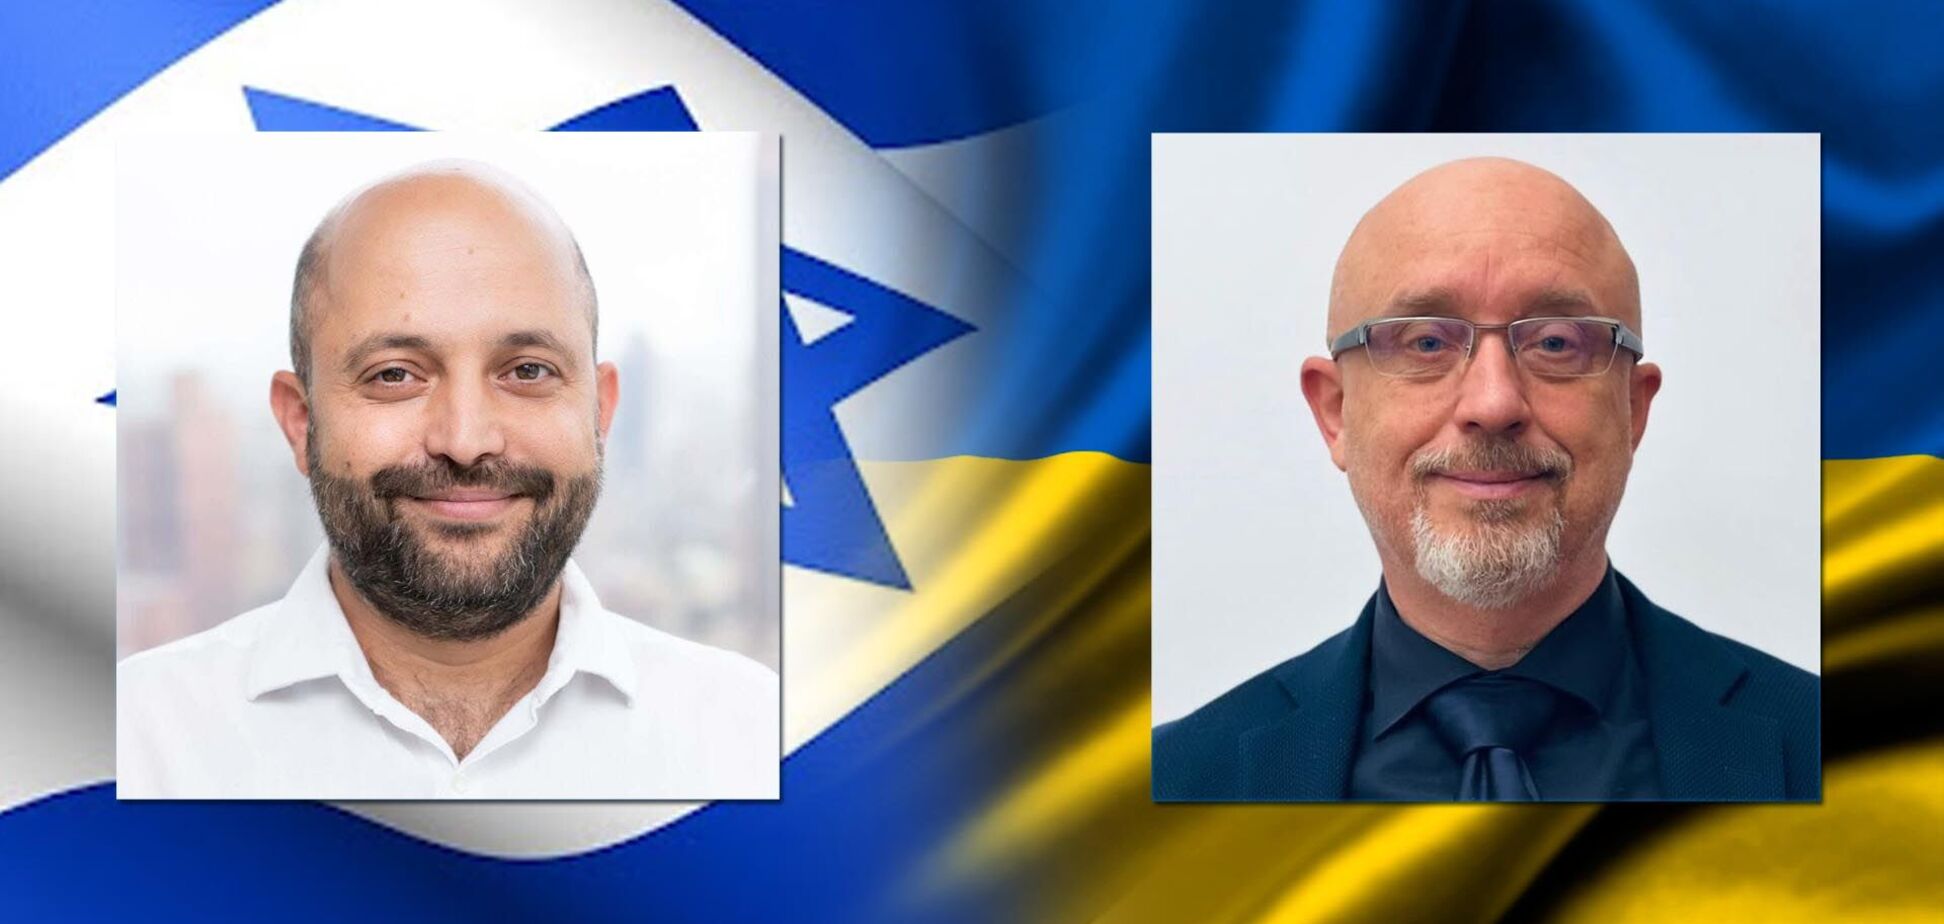 Министр обороны Украины Резников и председатель Совета нацбезопасности Израиля Хулата обсудили неотложные вопросы безопасности